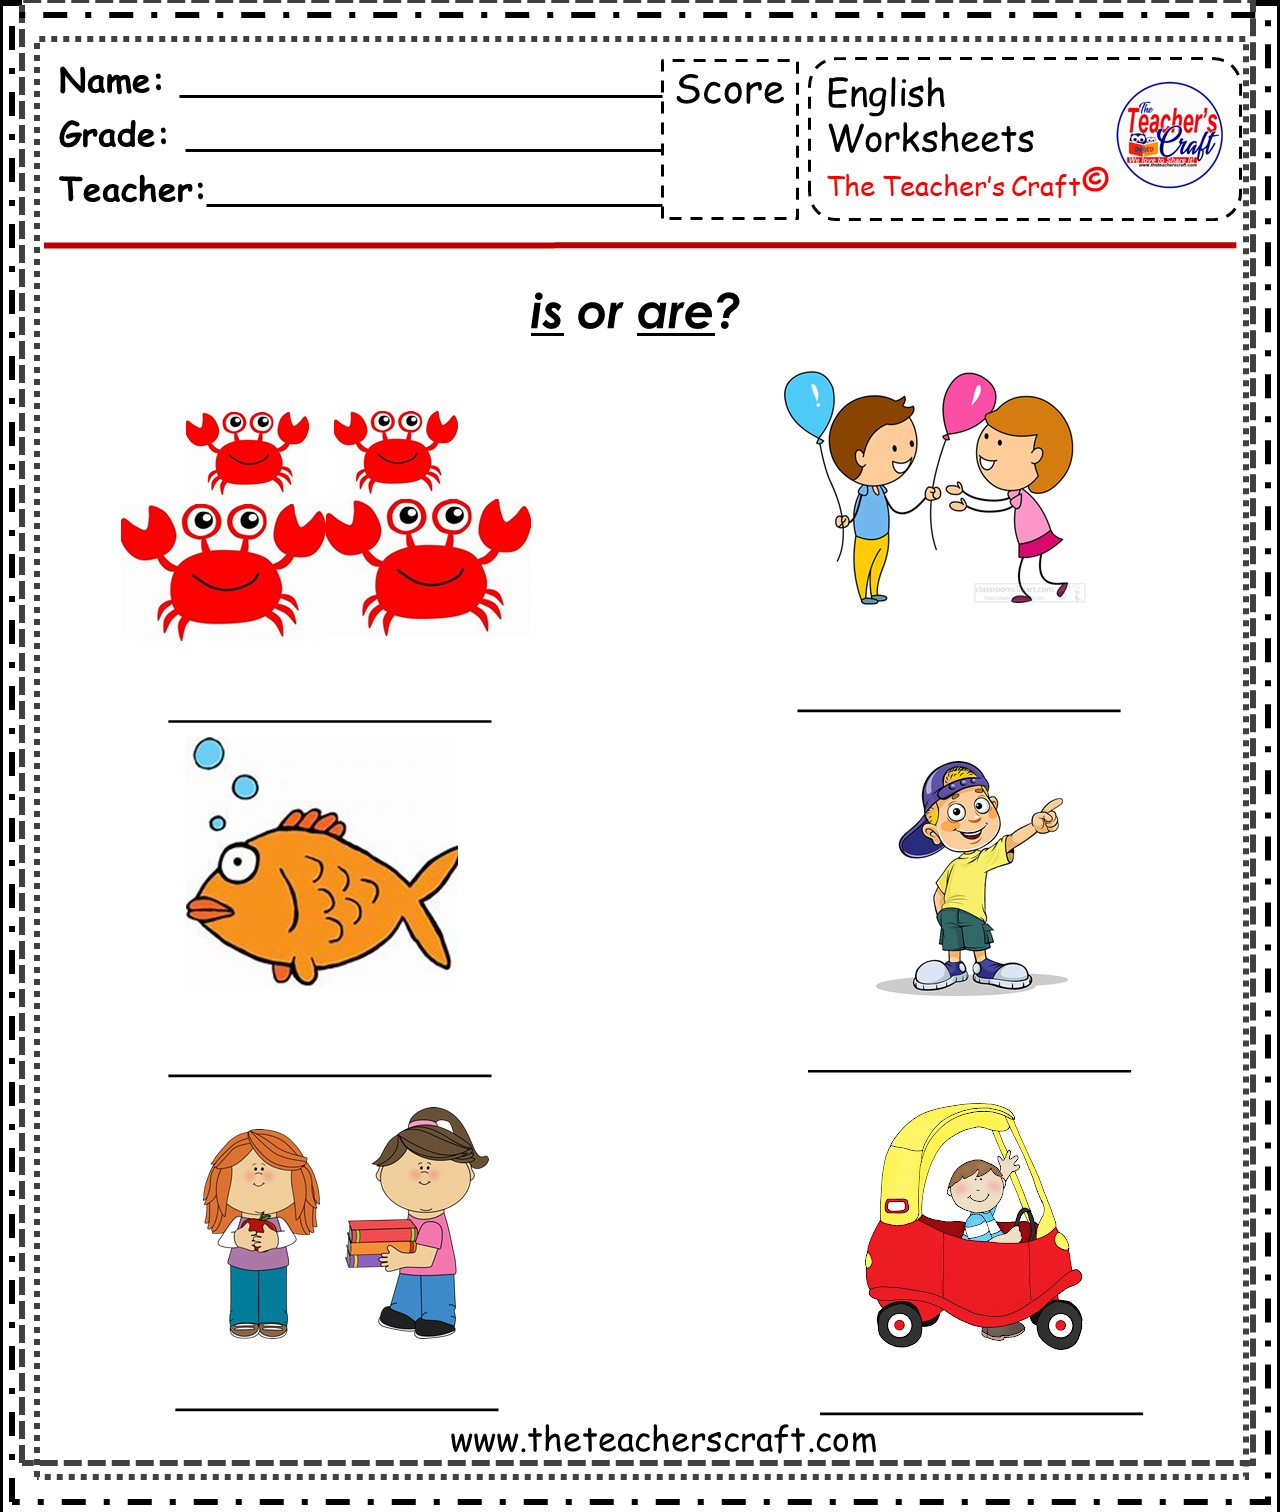 be-verbs-the-teacher-s-craft